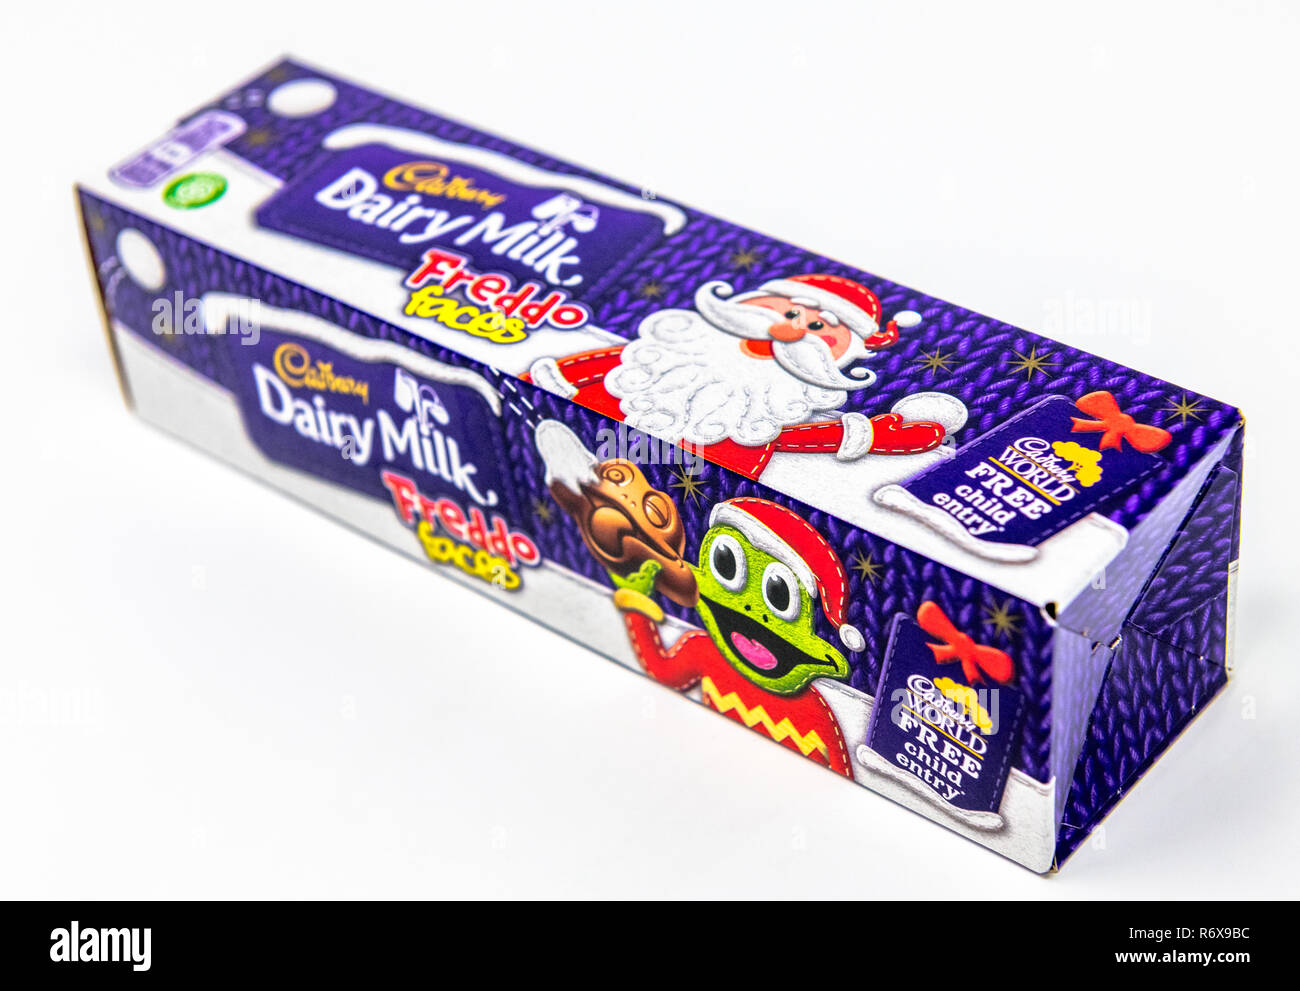 Cadbury latte freddo facce con un tema natalizio in una scatola di cartone. Foto Stock